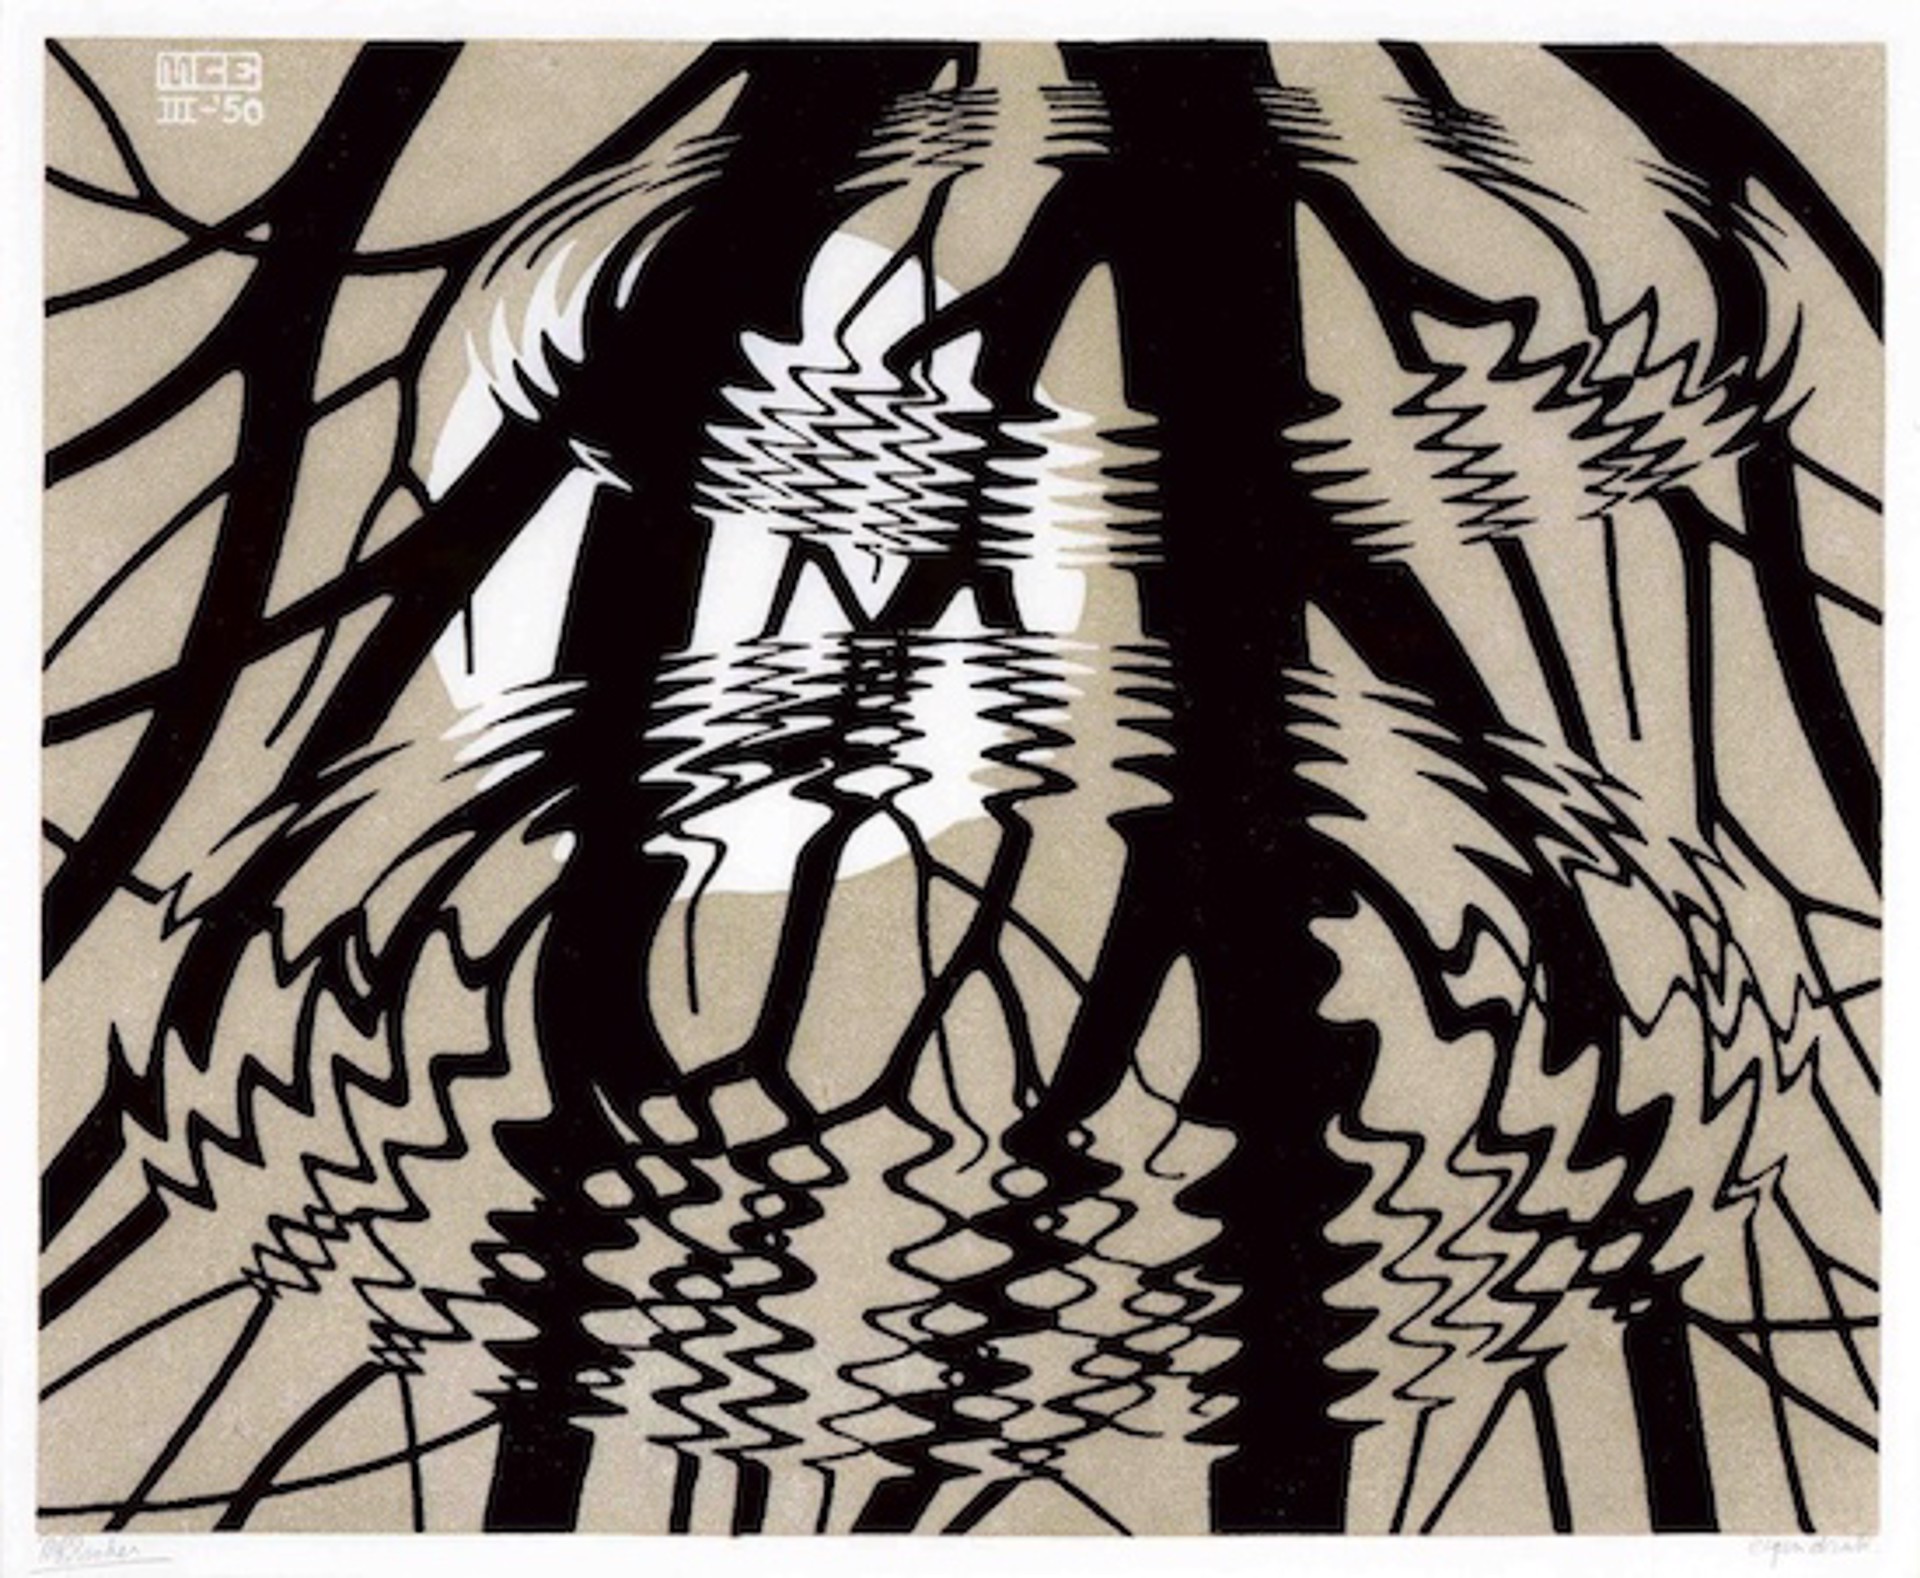 Rippled Surface by M.C. Escher